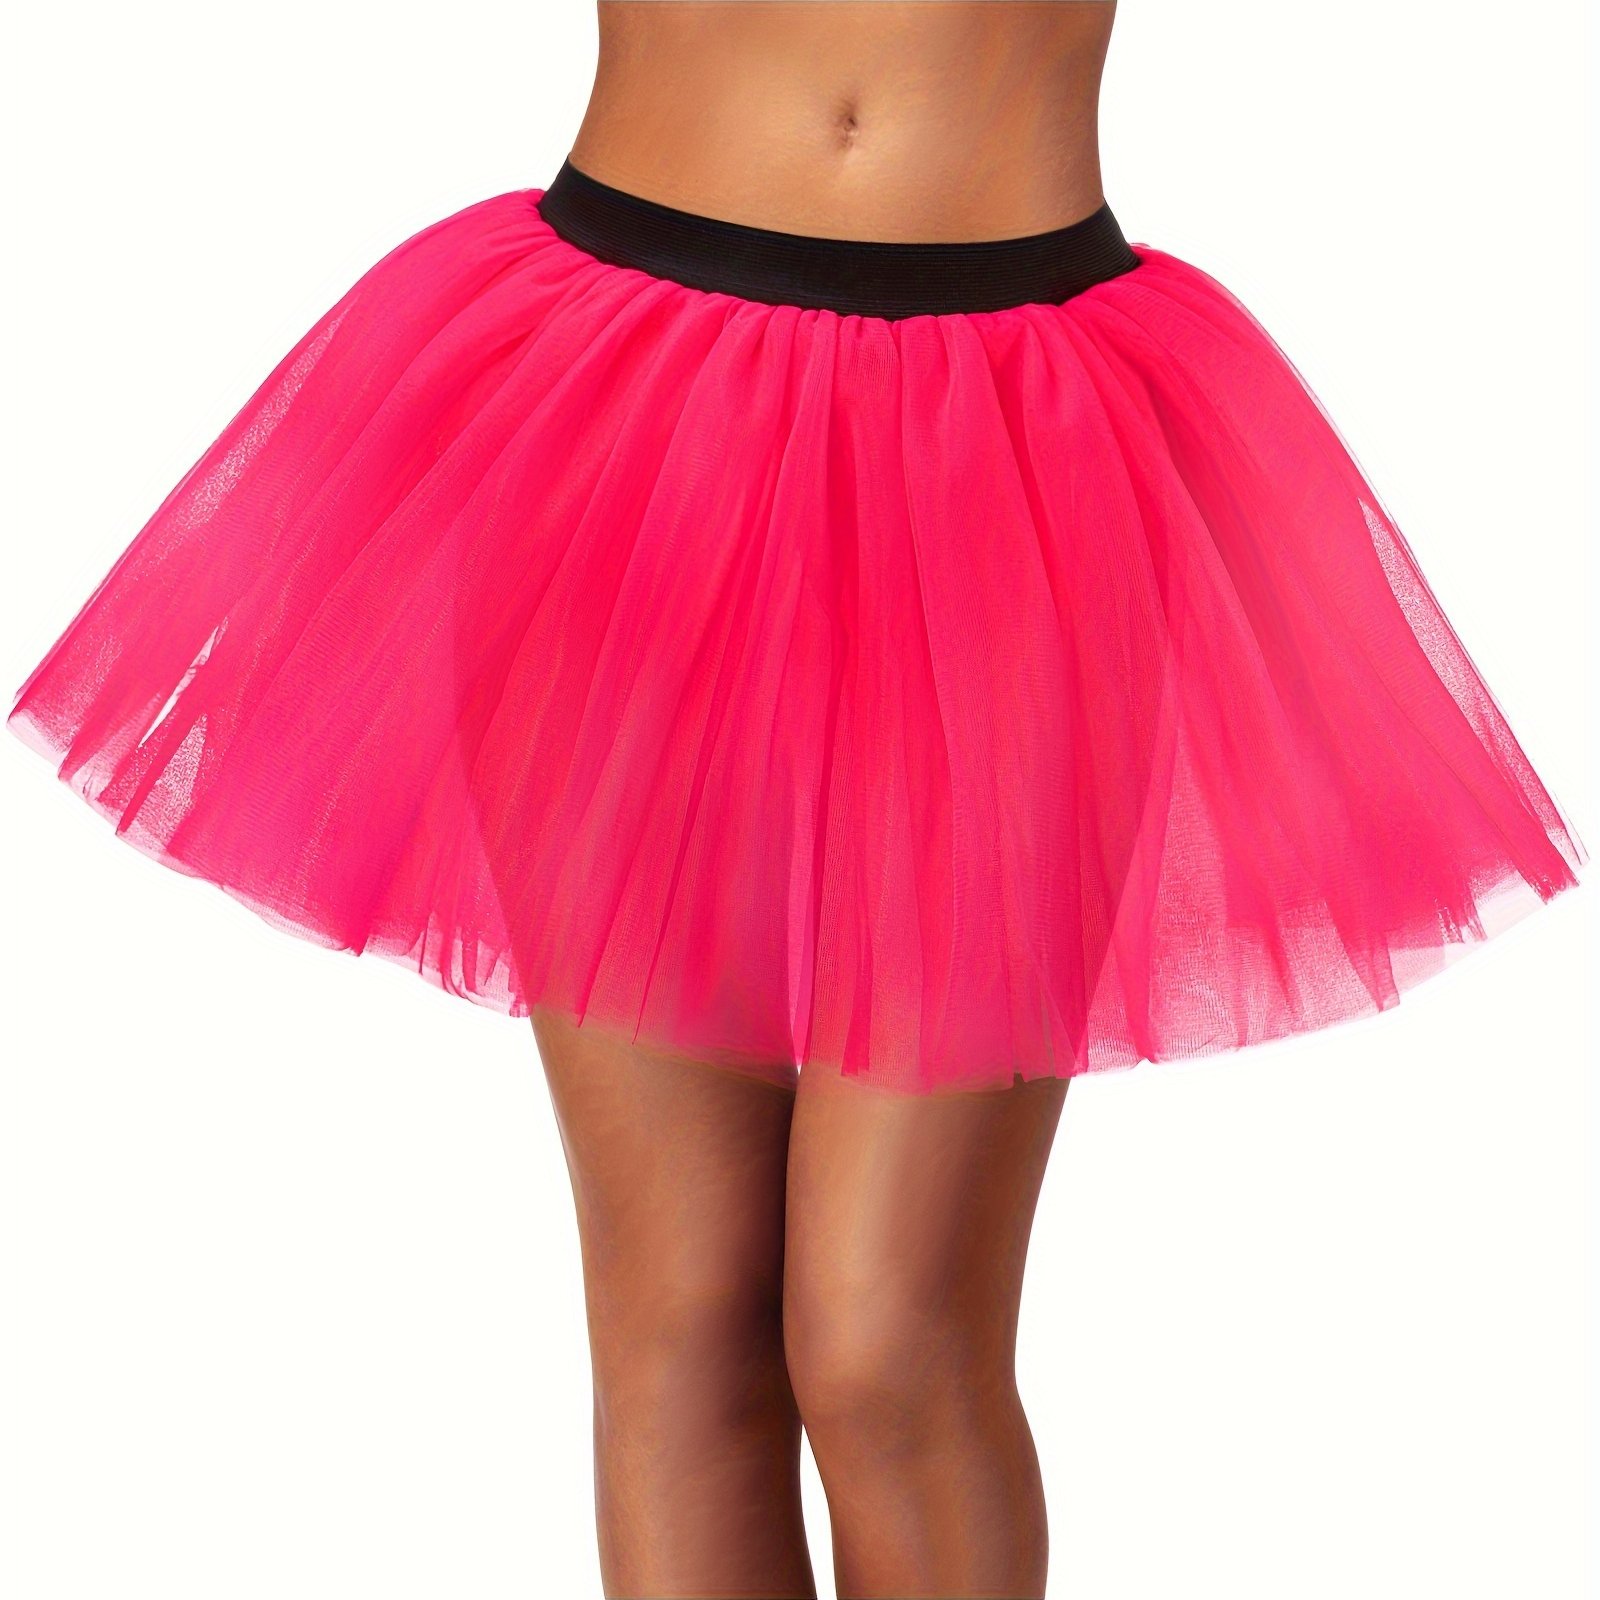 womens 3 layered tulle ballet skirt elastic waistband ballerina skirt elegant party costume dancewear for adults